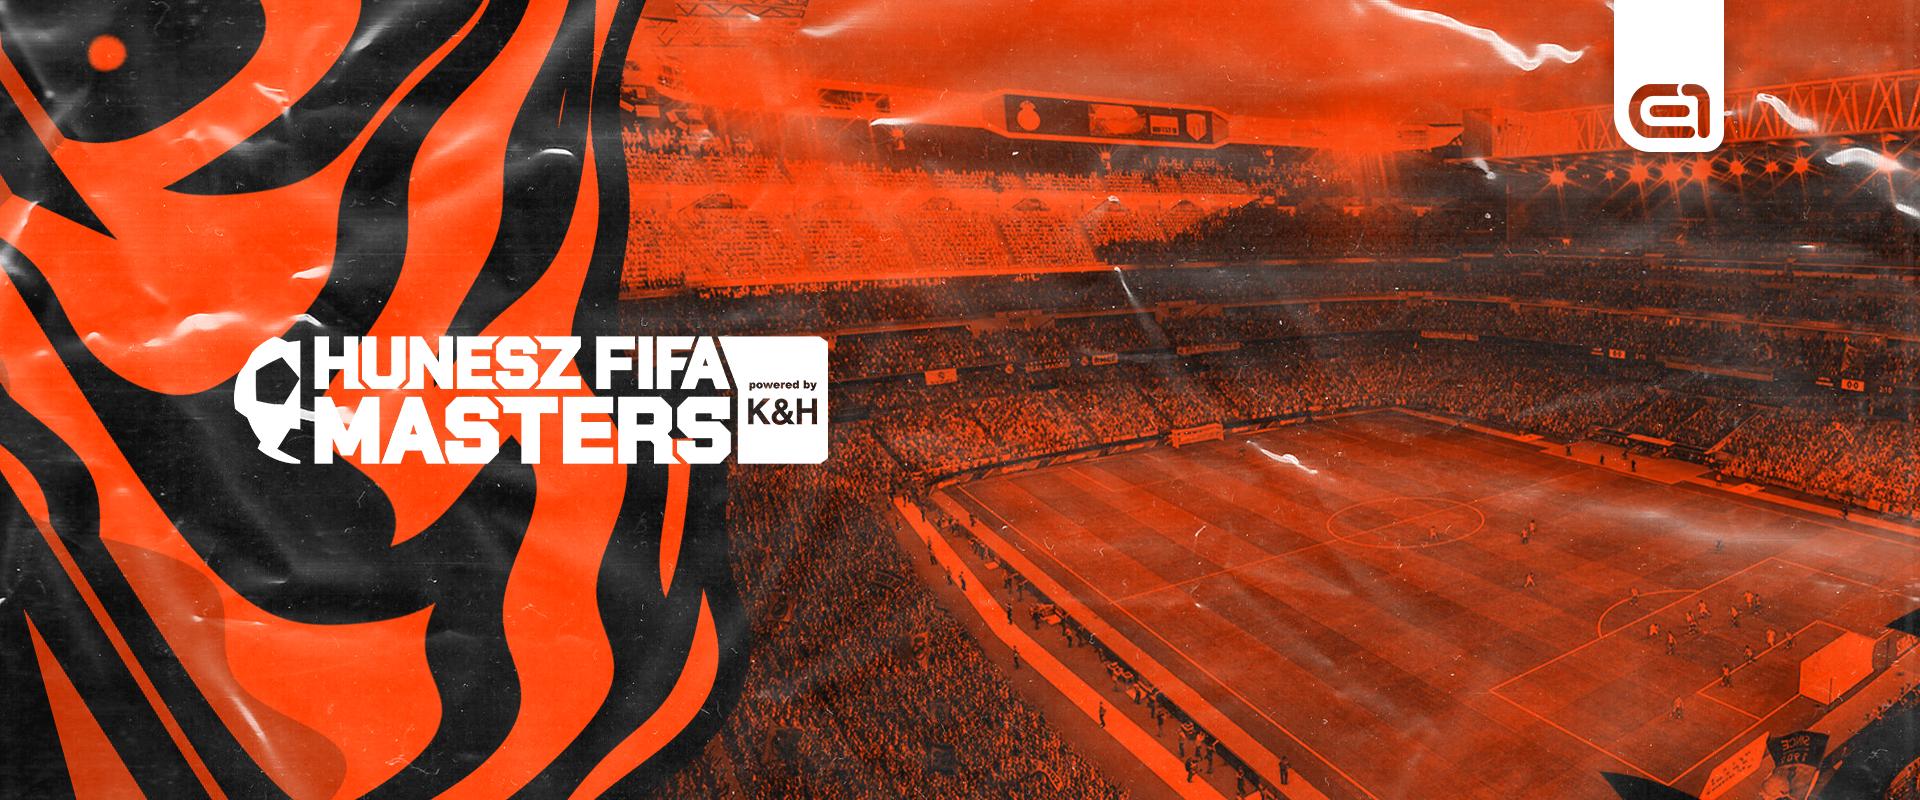 HUNESZ FIFA Masters powered by K&H : Sero ezúttal sem talált legyőzőre, az Invitationalön koronázhatja meg a szezonját